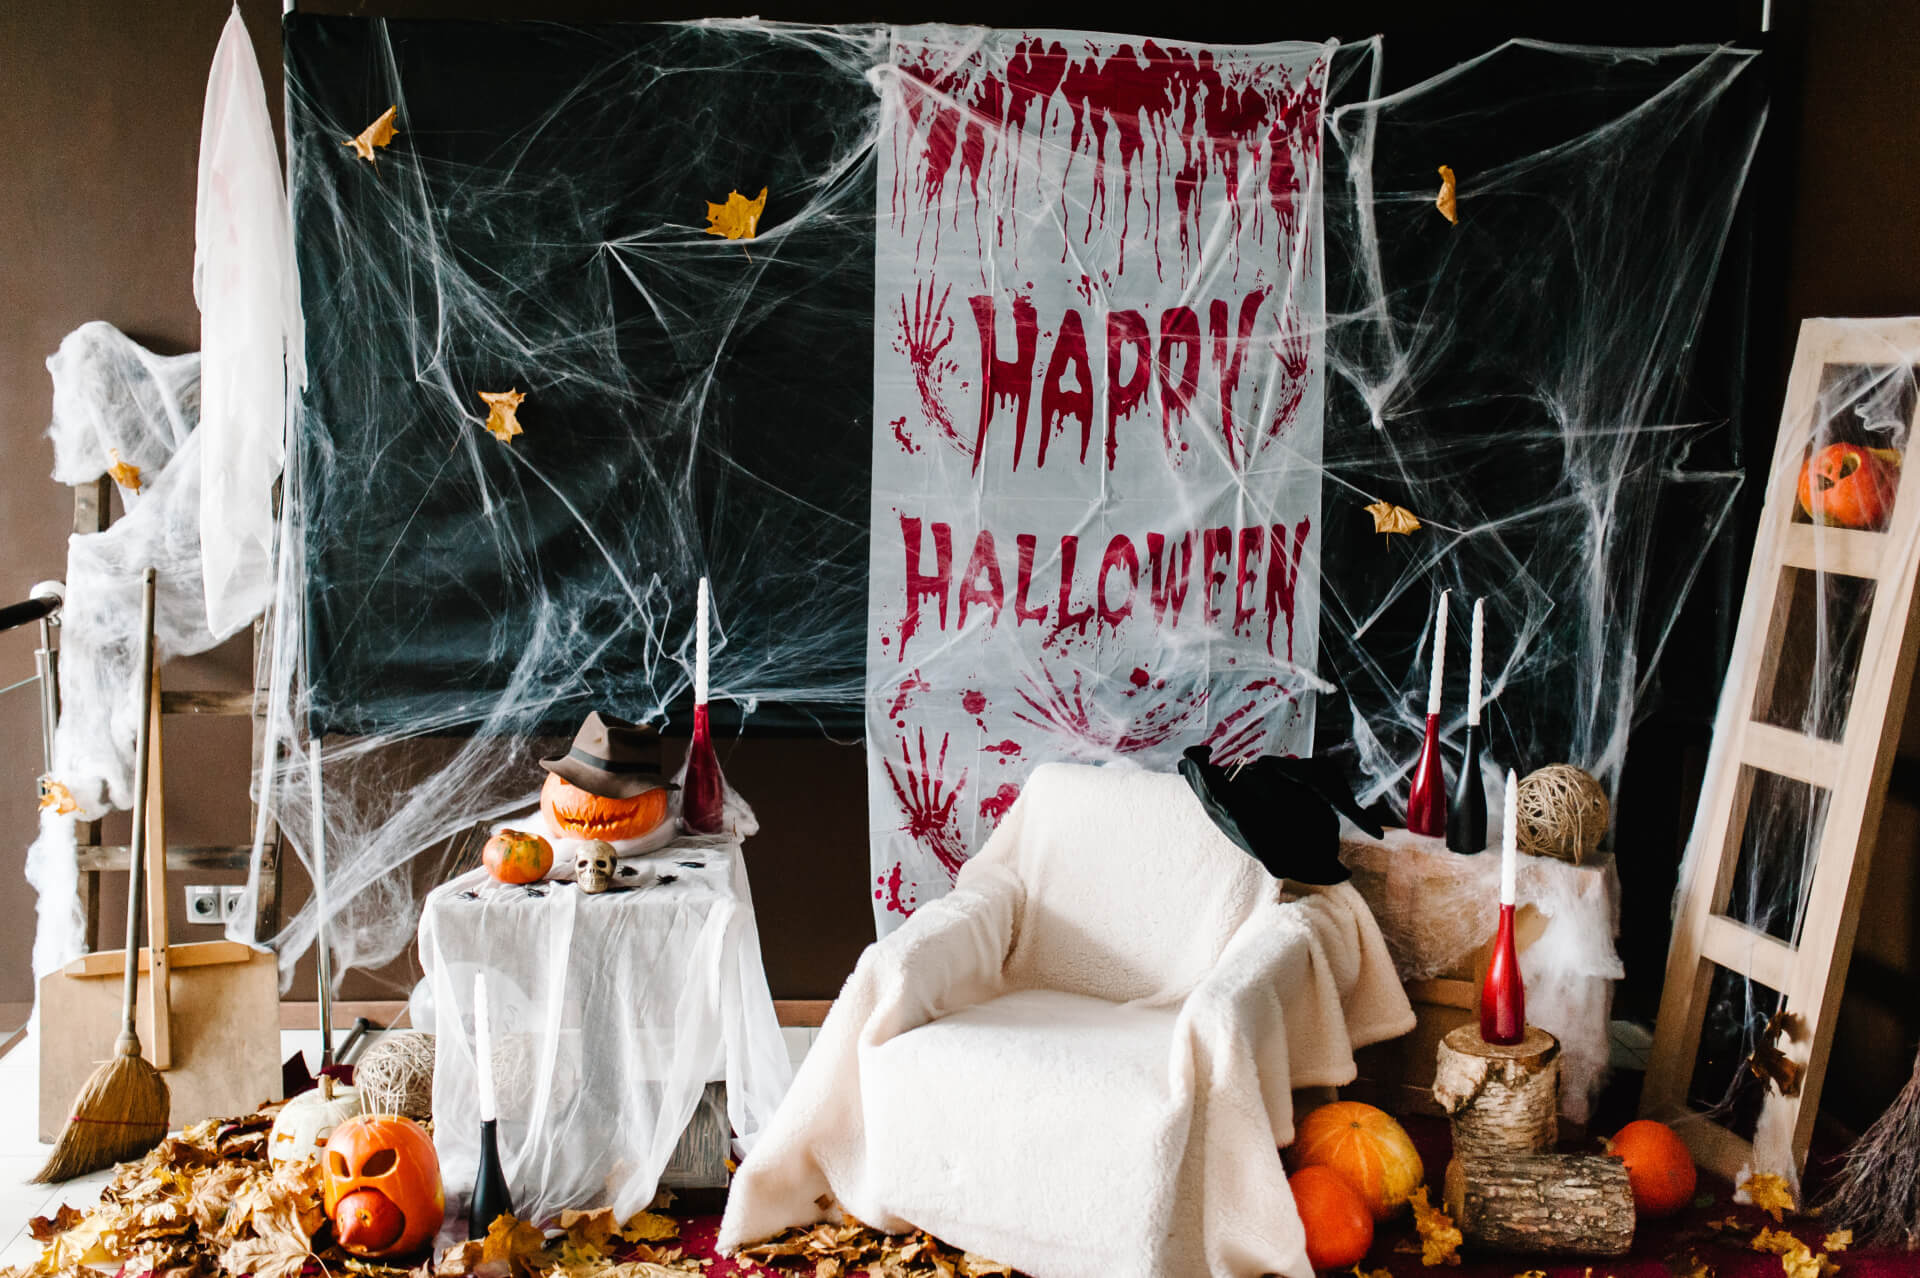 Spiele für eine gelungene Halloweenparty? Hier findest du Ideen wie den Halloween Escape Room und andere gruselige Aktivitäten.